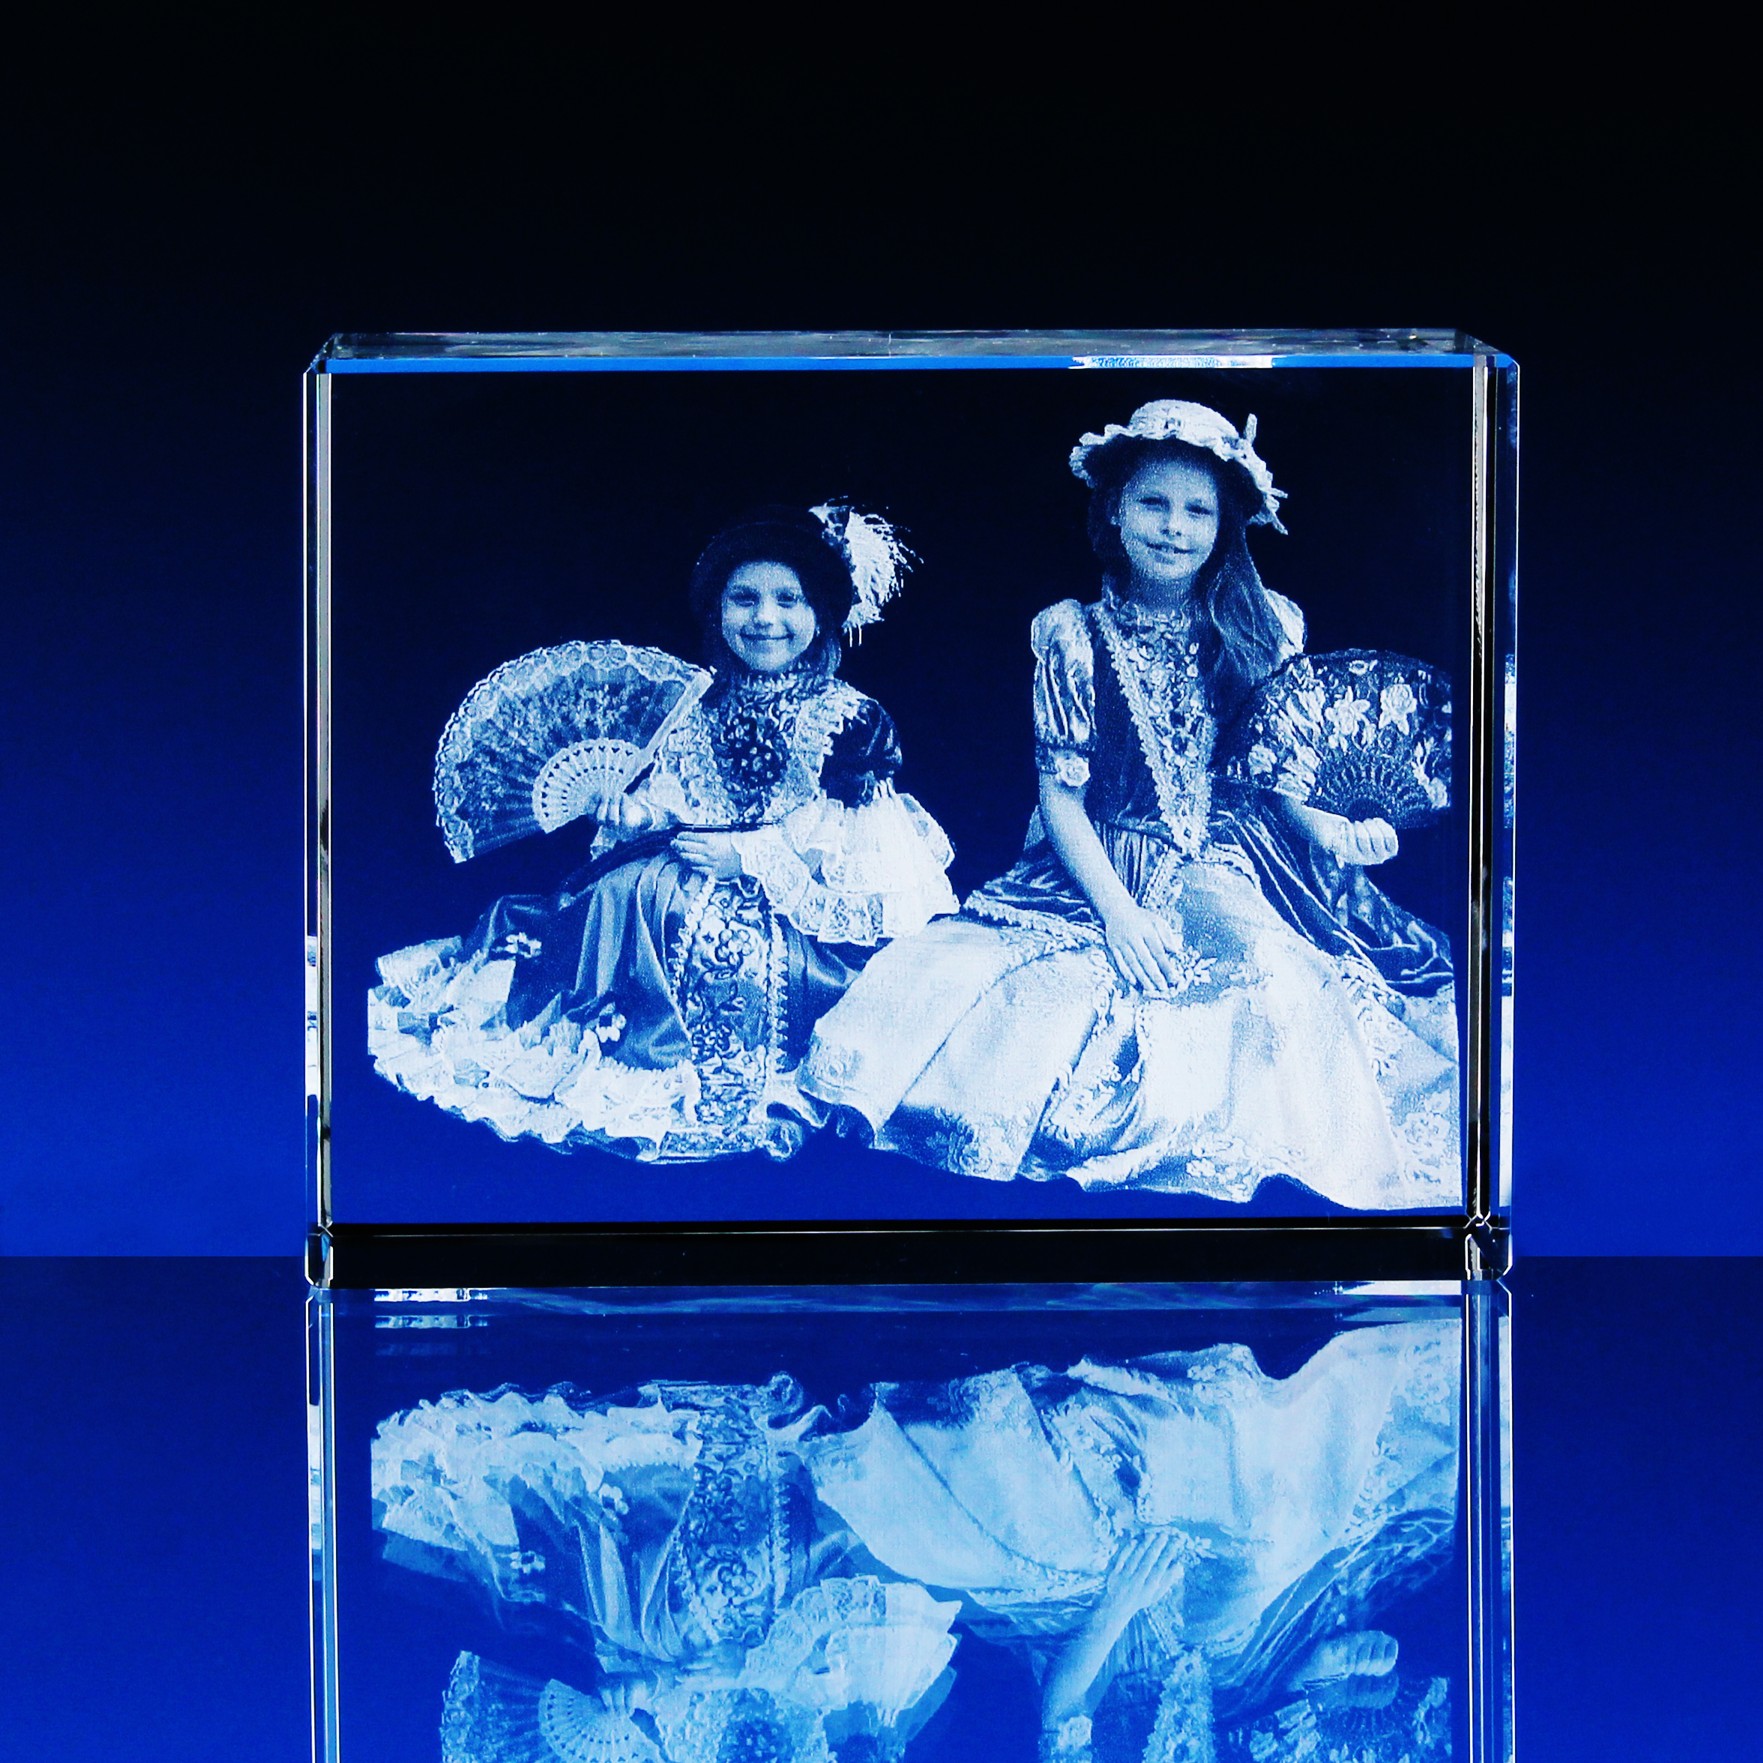 3D Laserovaná fotografie do skla - Portrét v kvádru 130x100x60 mm (P309b)